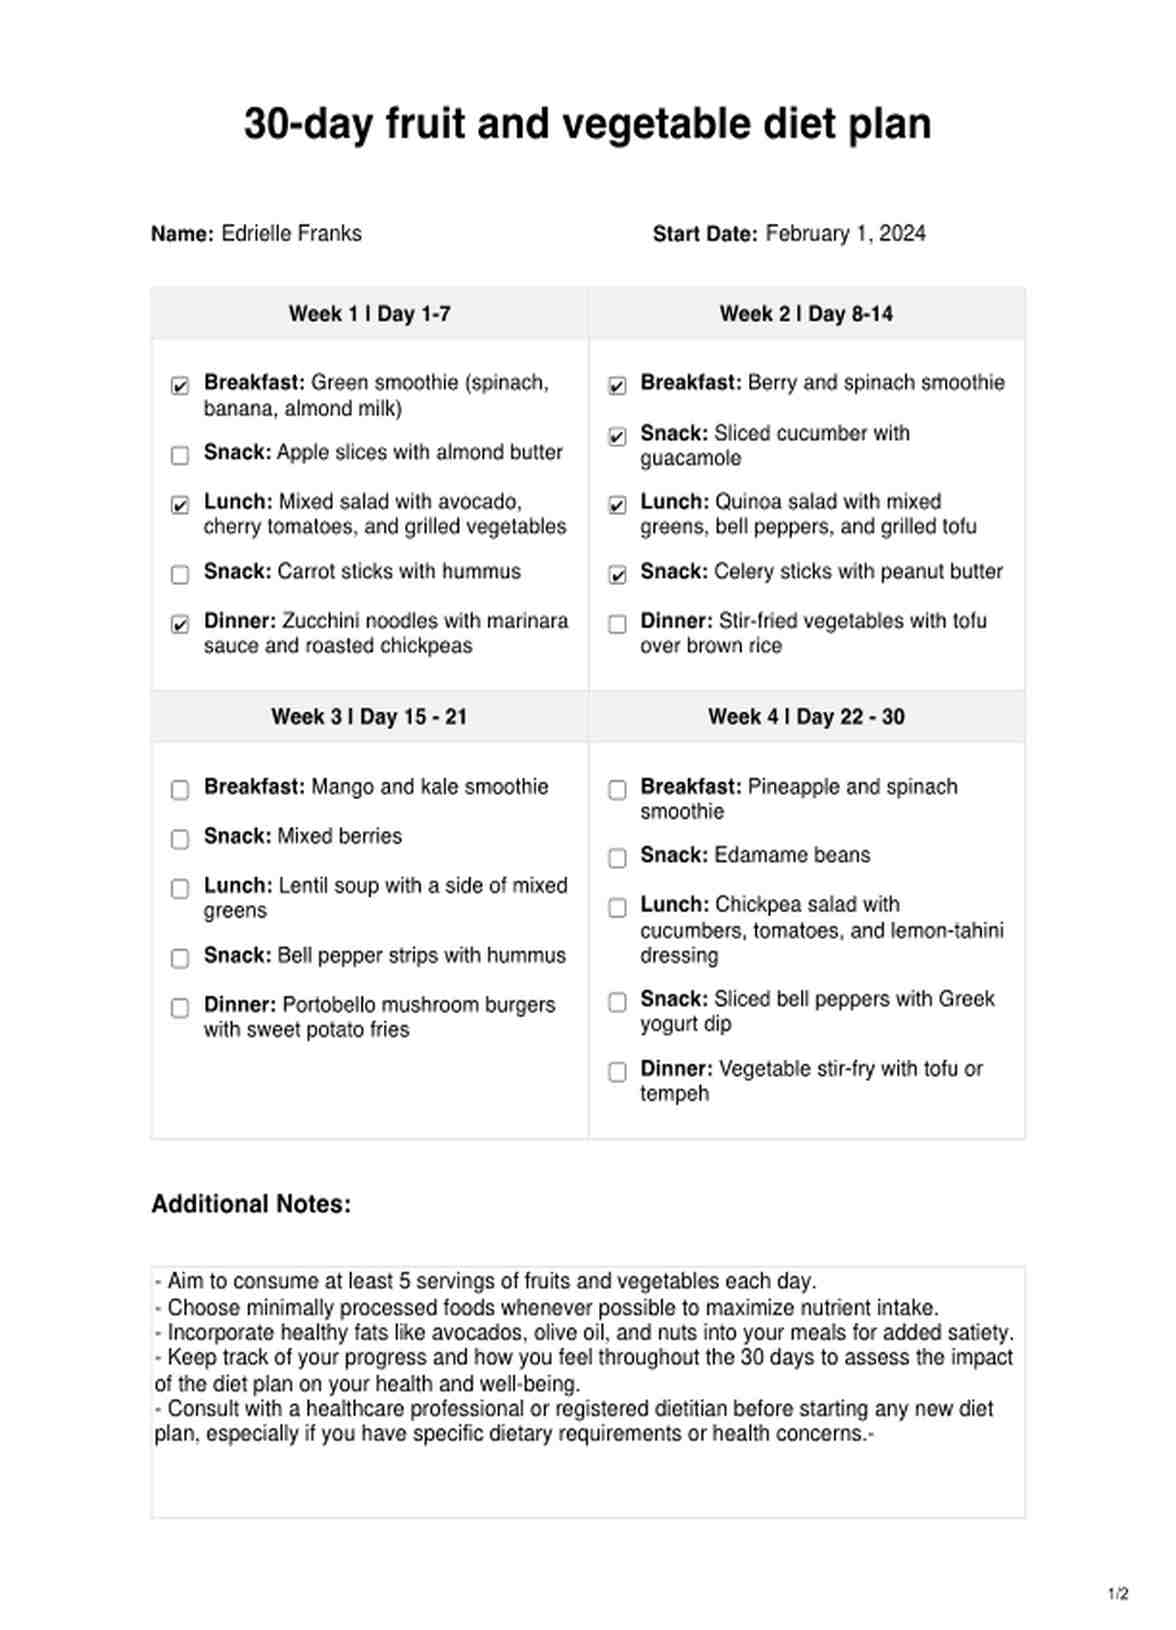 Plan de dieta de frutas y verduras de 30 días PDF Example